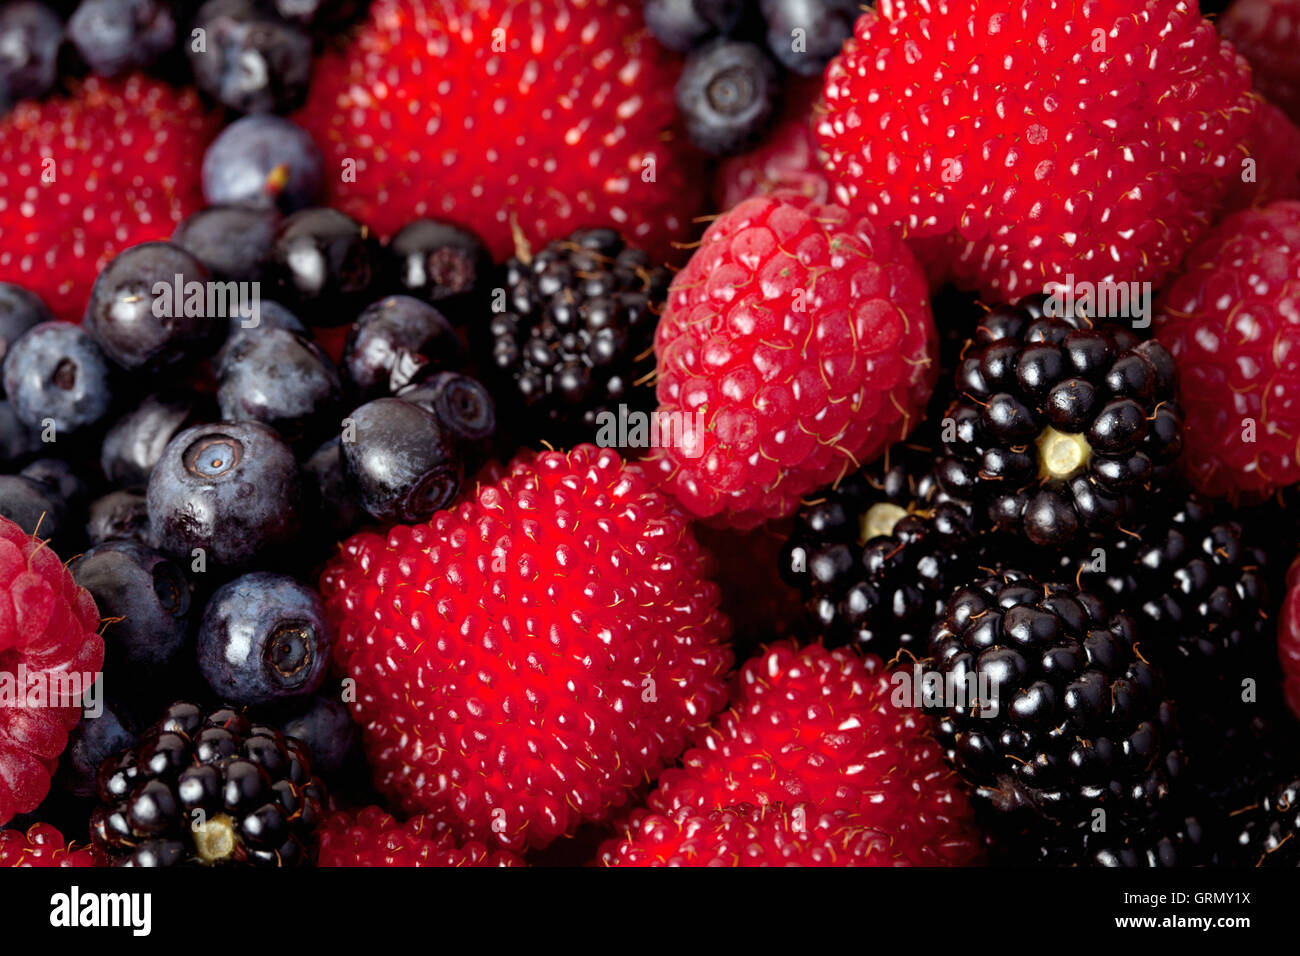 Frutti di bosco assortiti: lampone, mora e mirtillo - immagine di sfondo. Foto Stock